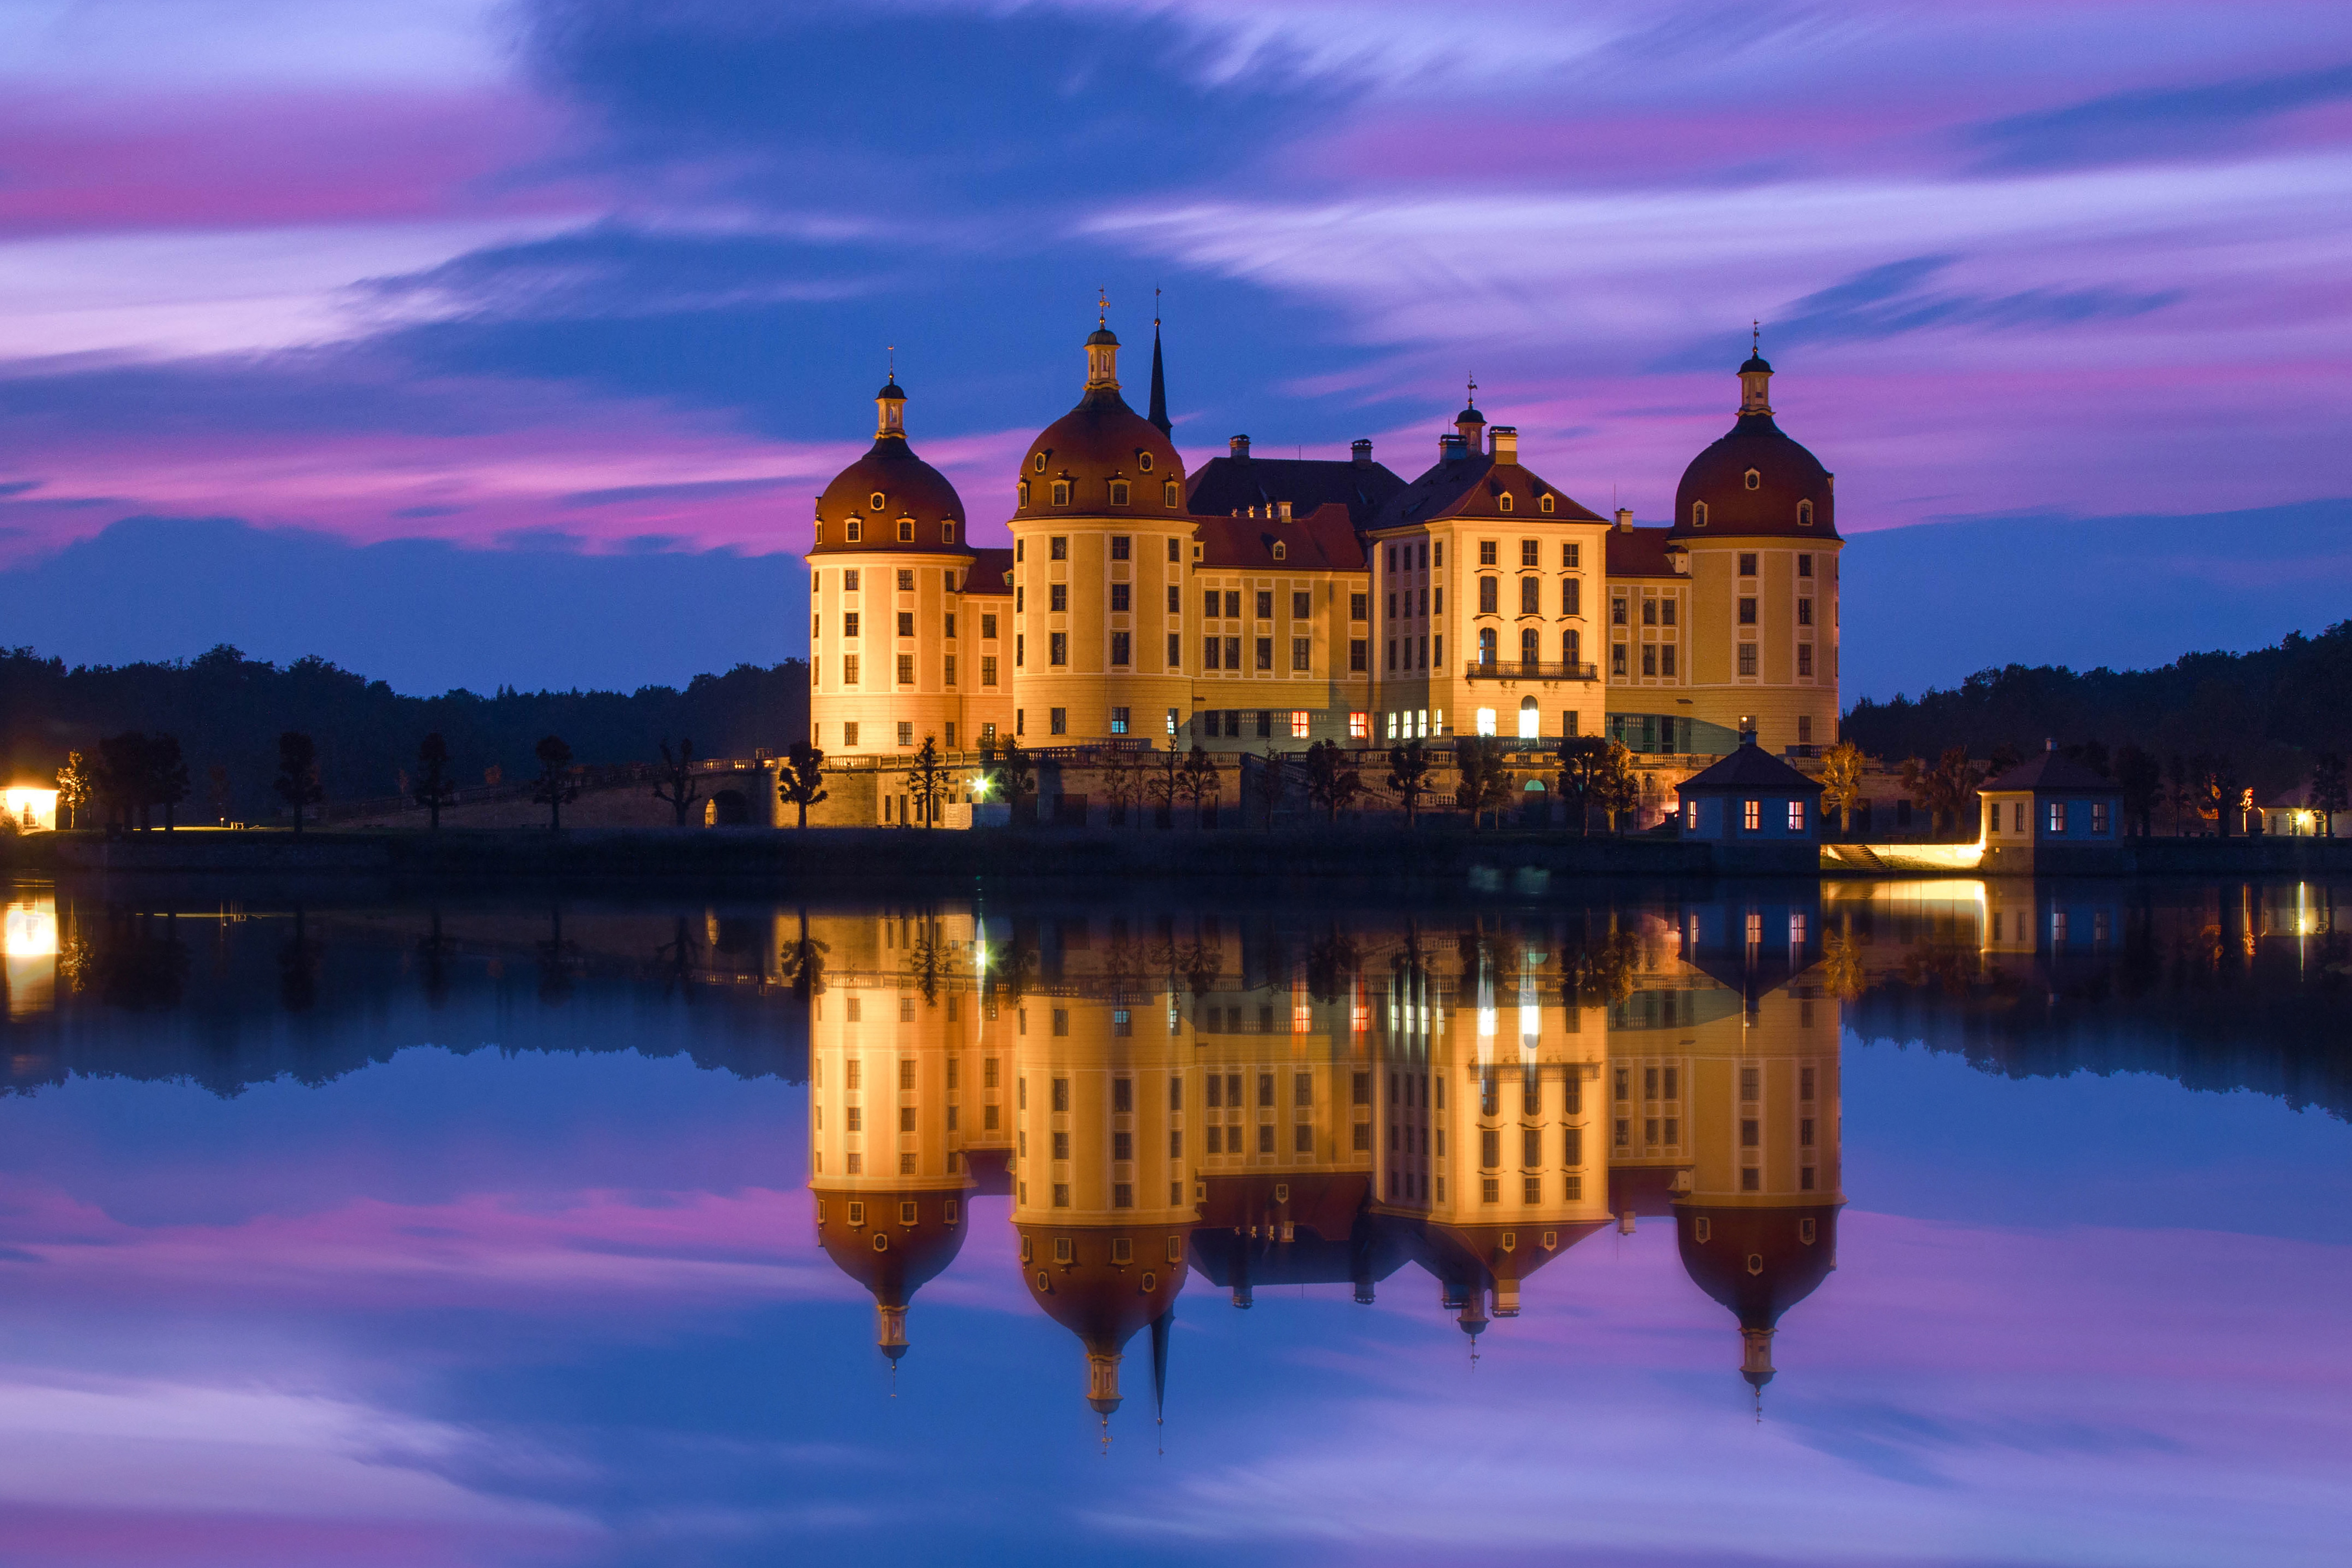 Castello di Moritzburg